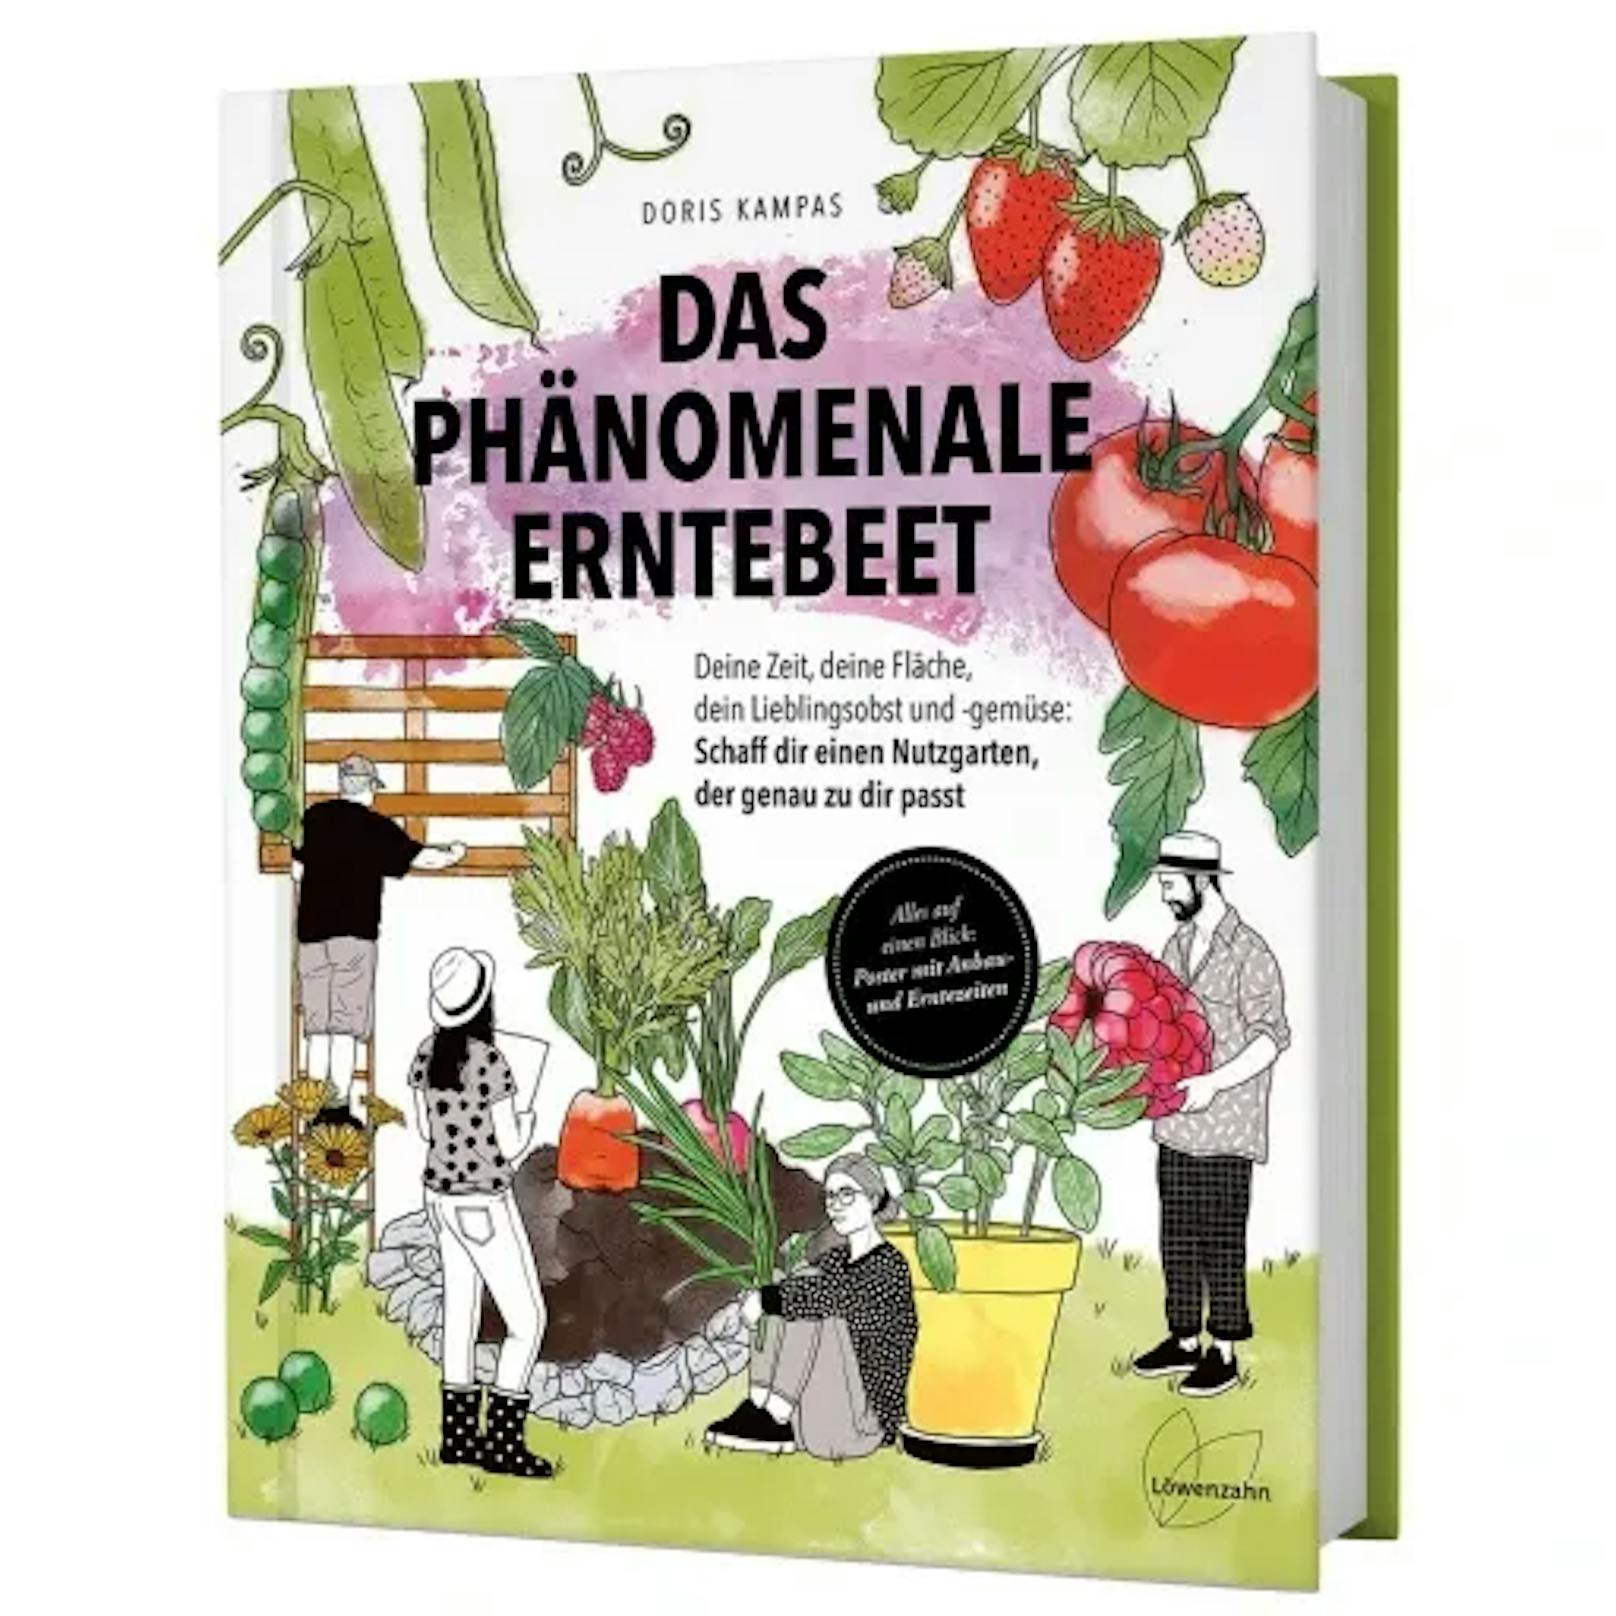 Mit dem neuen Buch "Das phänomenale Erntebeet" von der&nbsp;österreichischen Garten- und Bio-Expertin Doris schaffst du einen Nutzgarten, der genau zu dir passt. 24,90 Euro, erschienen im Löwenzahn Verlag.